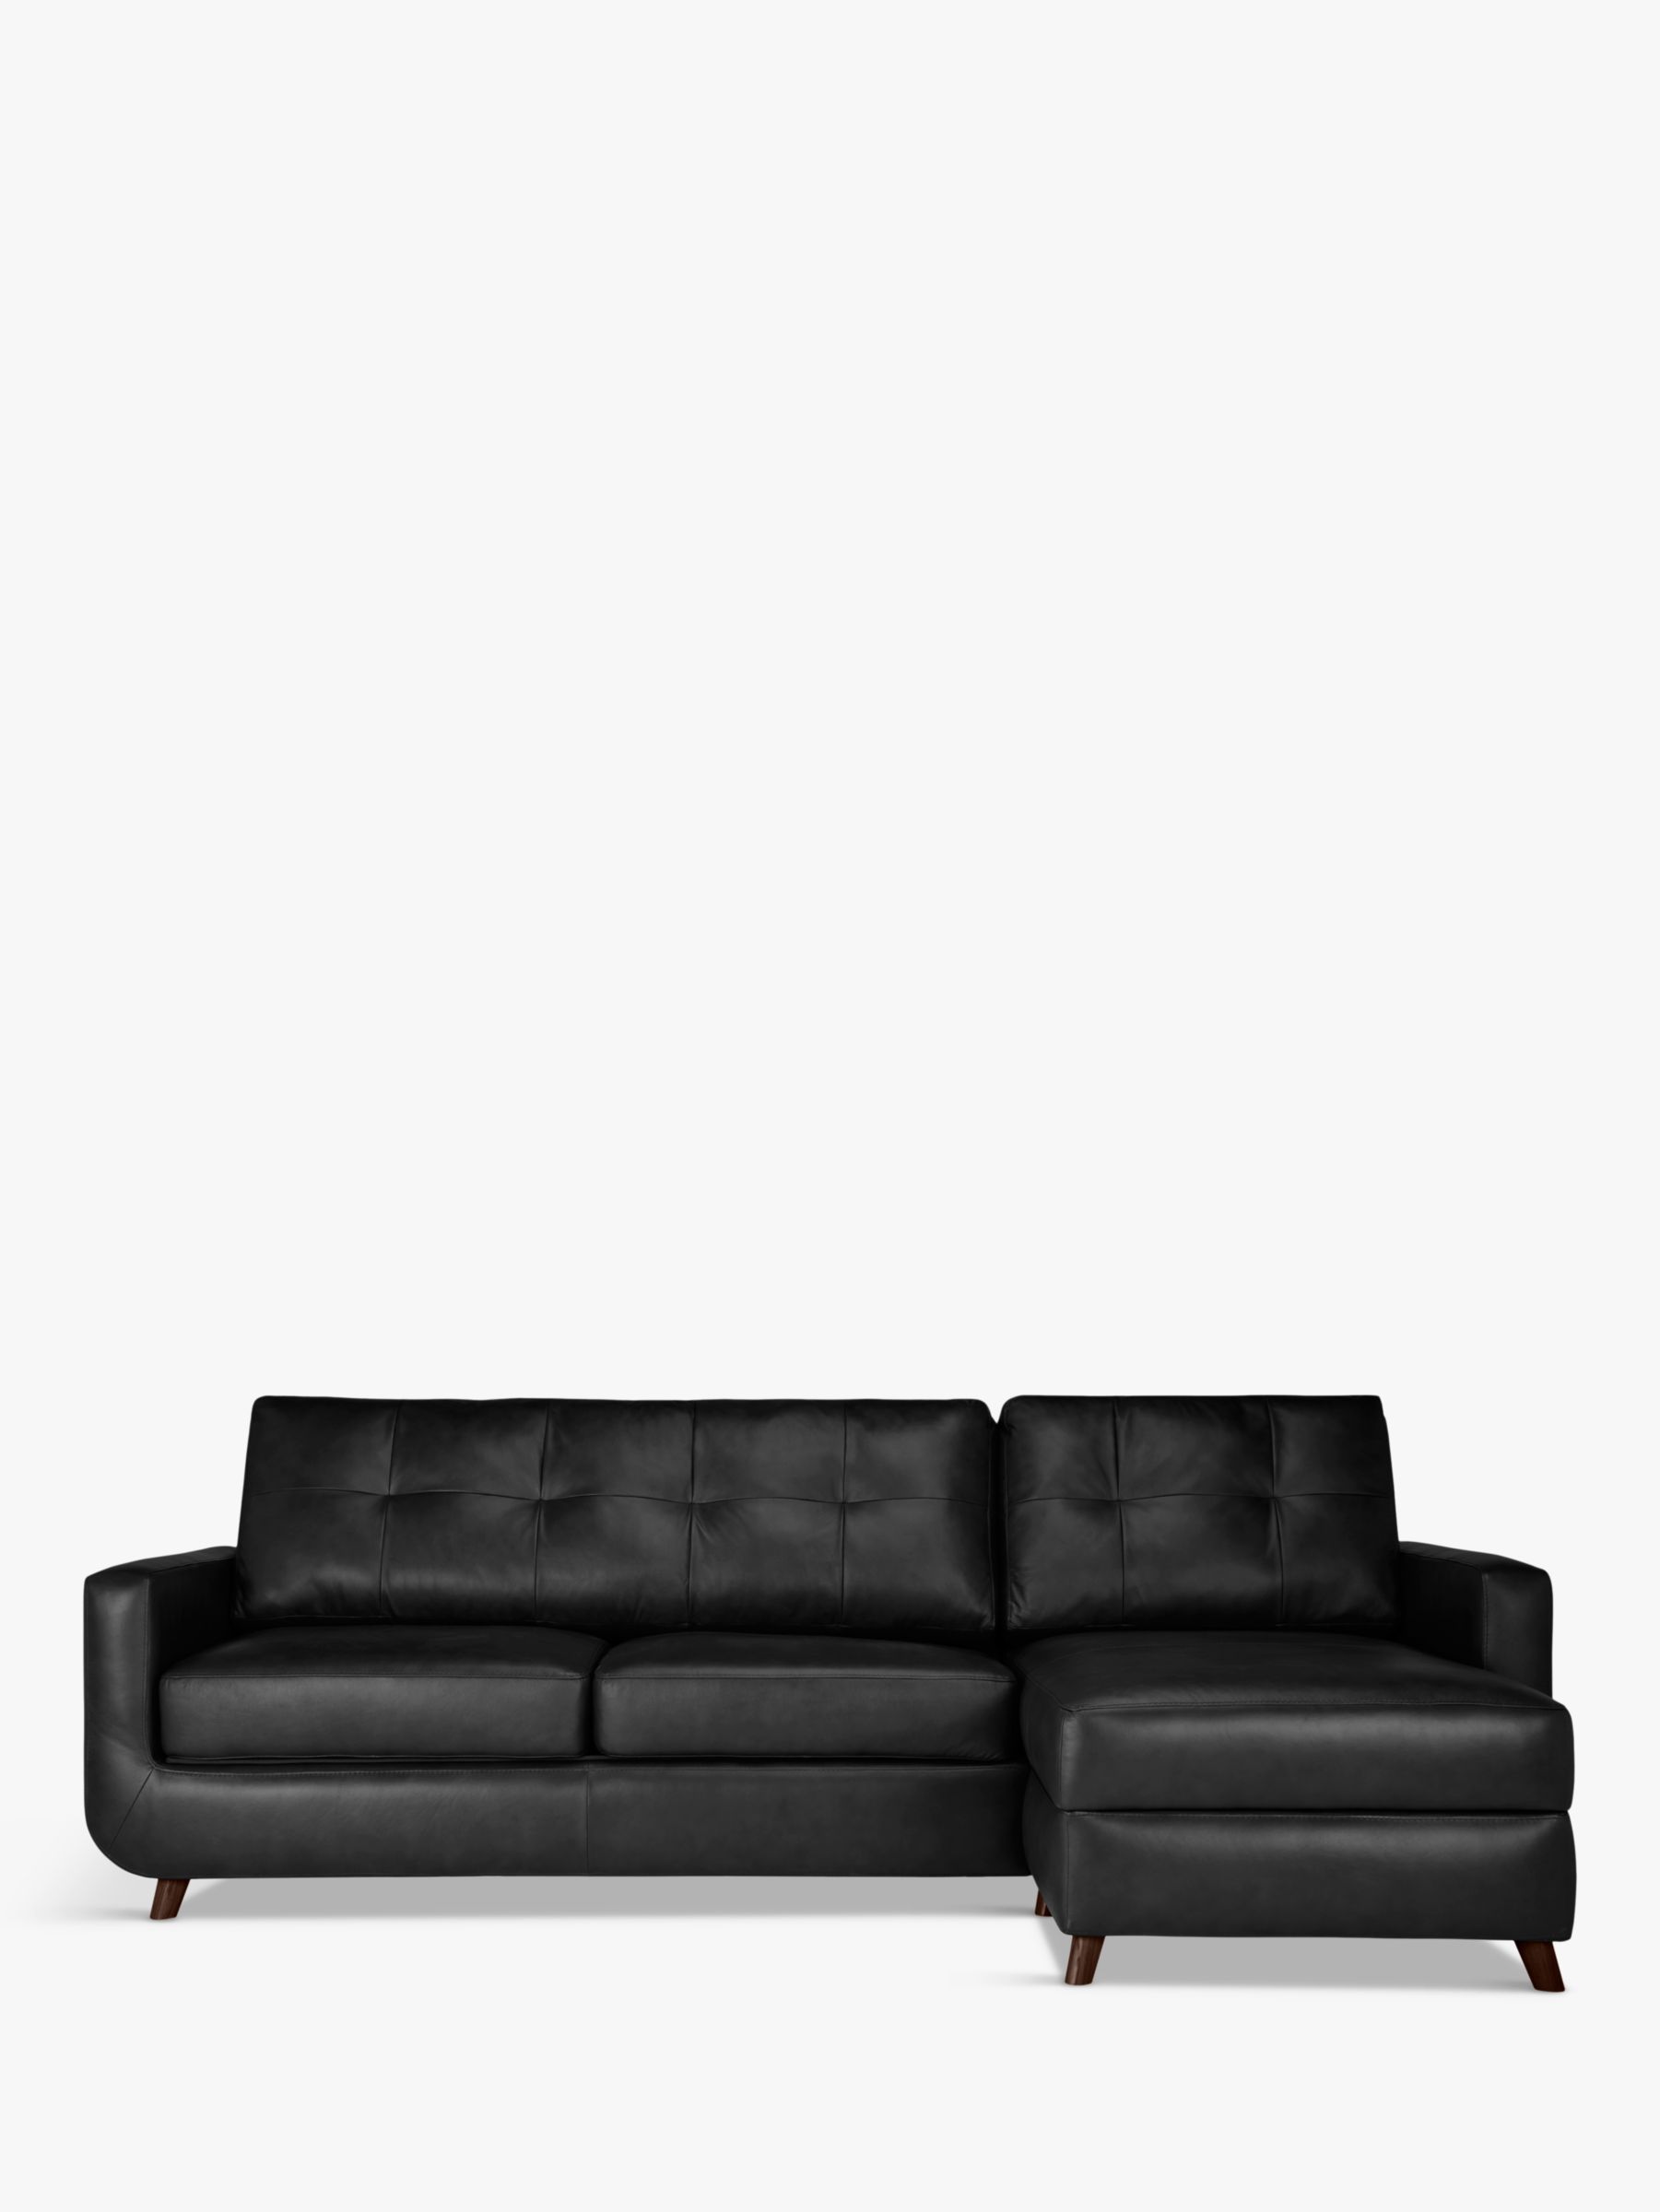 Barbican Range, John Lewis Barbican RHF Chaise End Leather Sofa, Dark Leg, Contempo Black